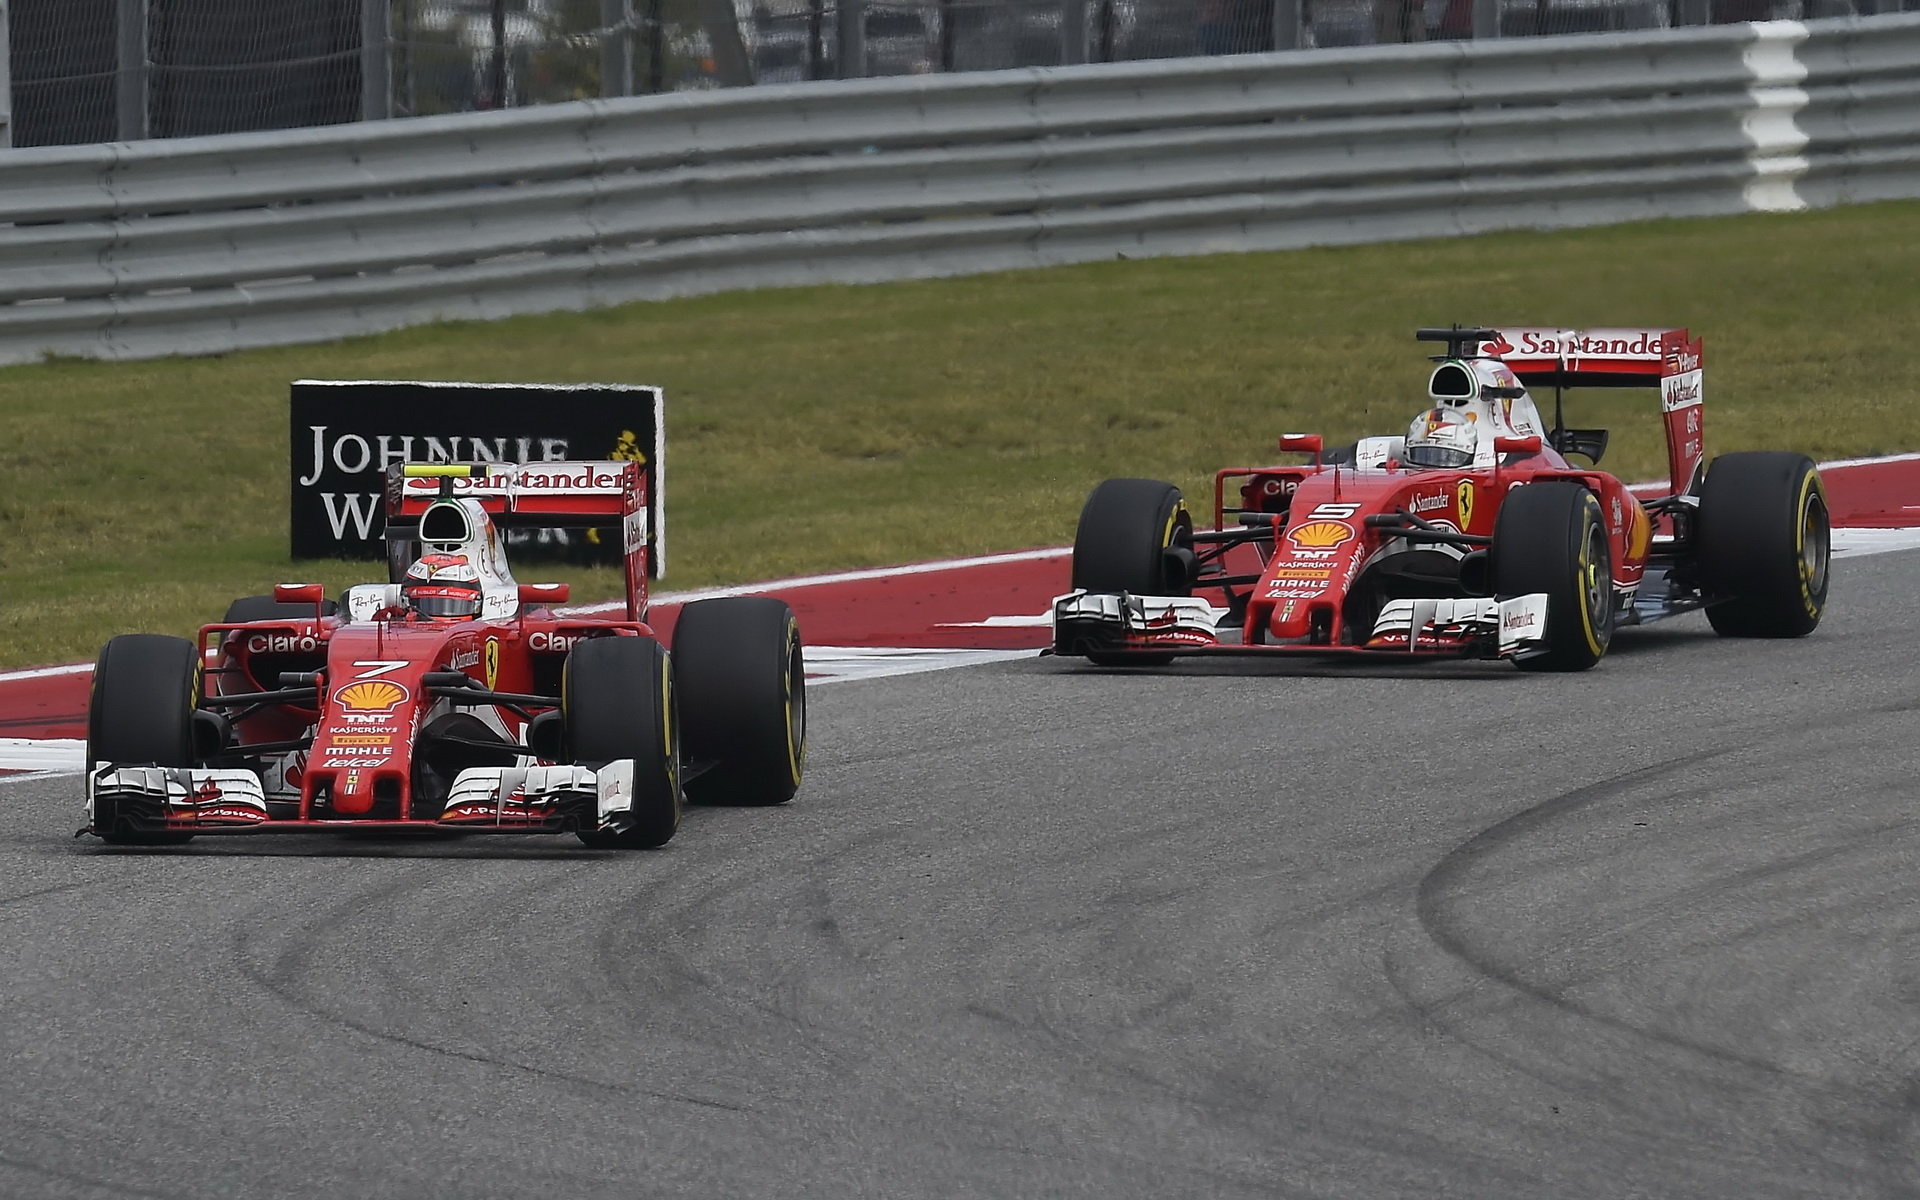 Jezdci Ferrari zažili těžký trénink, měli problém najít volný prostor na trati